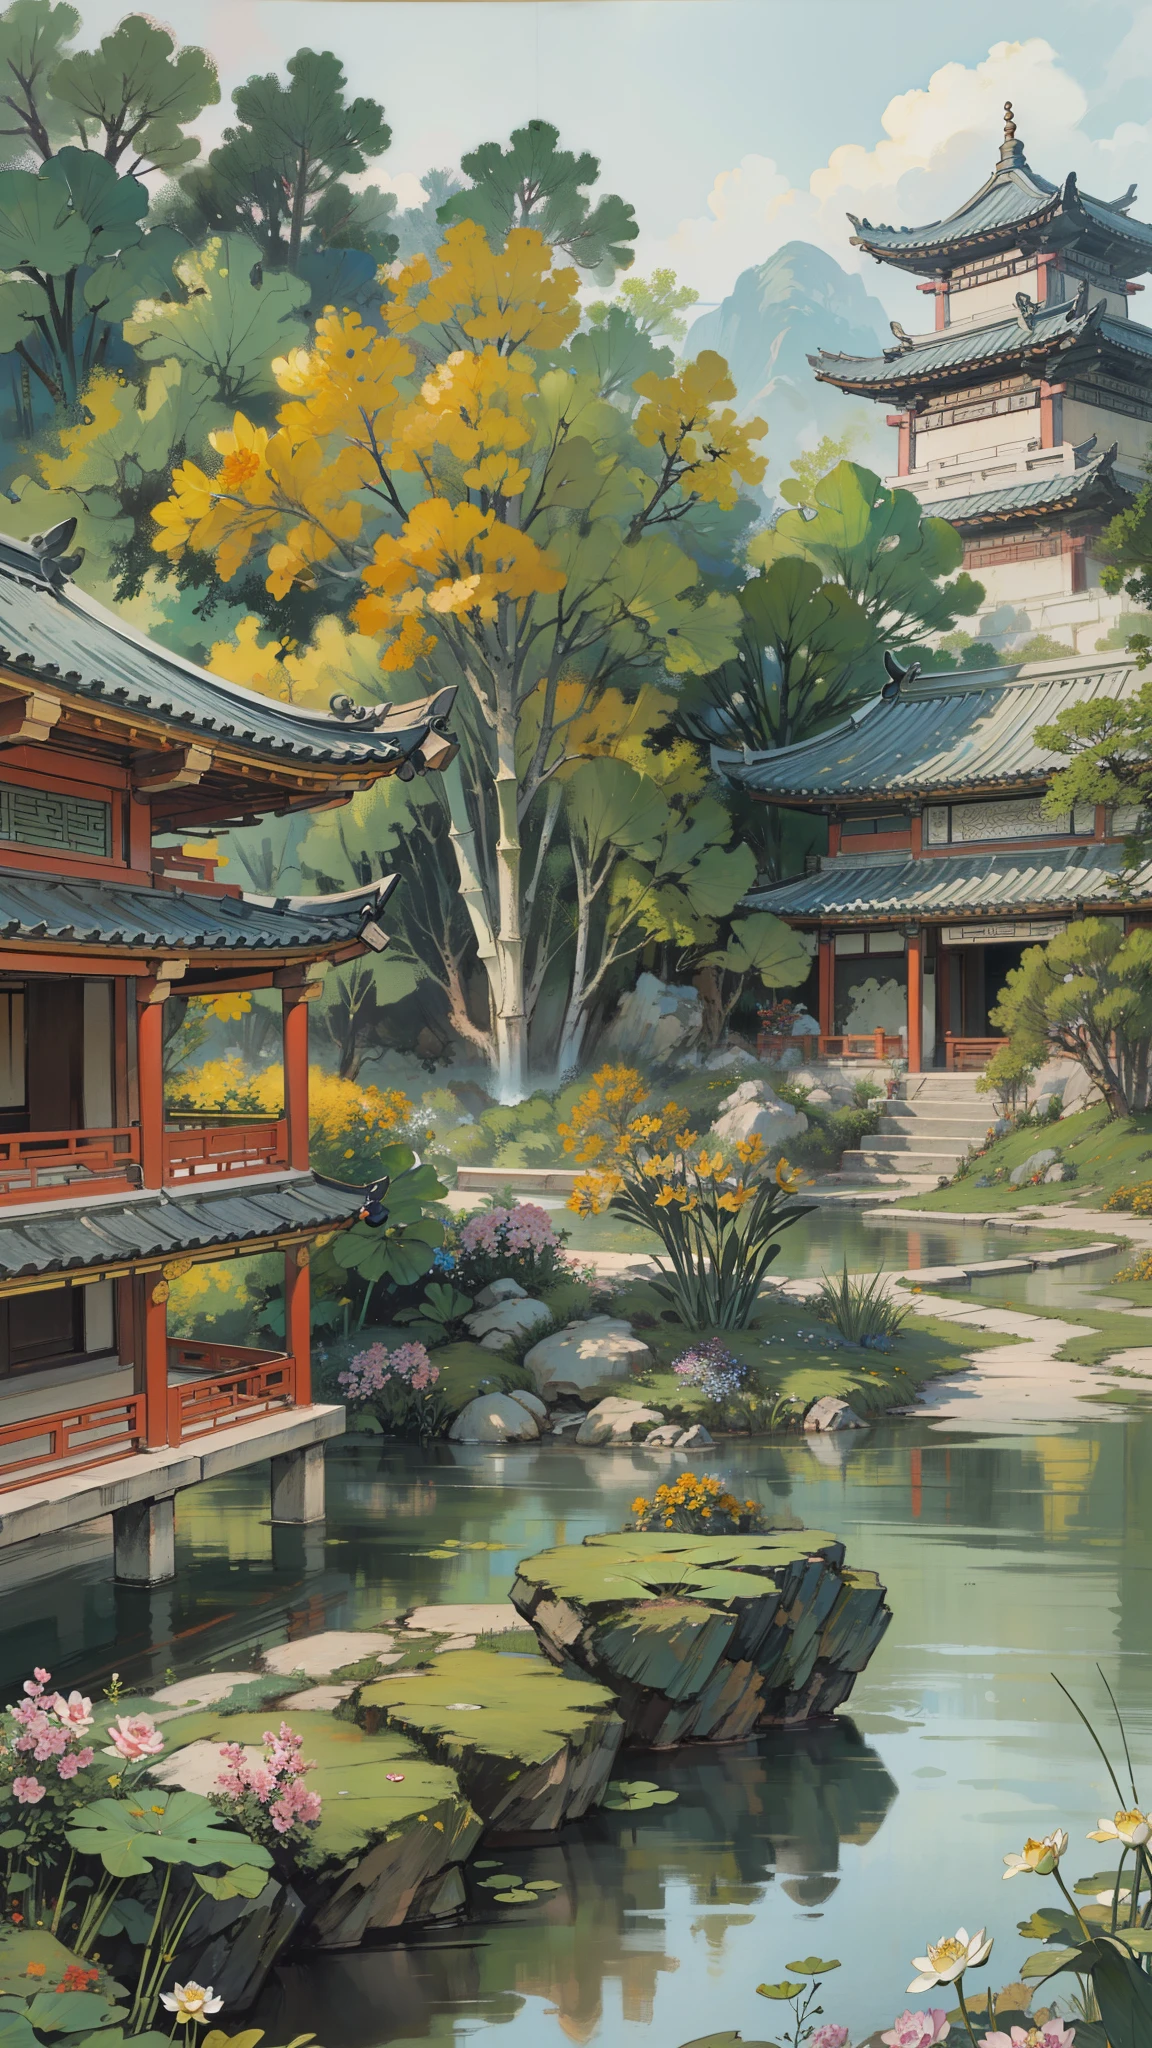 ((최고의 품질, 걸작: 1.2)), CG, 8K, 복잡한 세부 사항, 관점, (주변에 아무도 없어), (고대 중국 정원), pond filled with lotus 꽃들, 바위, 꽃들, 대나무 숲, 떨어지다, 숲이 우거진 지역, 졸졸 흐르는 개울을 가로지르는 작은 다리, detailed foliage and 꽃들, (태양이 빛난다, 반짝이는 파도), 평화롭고 고요한 분위기, ((부드럽고 우아한 색상)), ((정교하게 만들어진 구성))